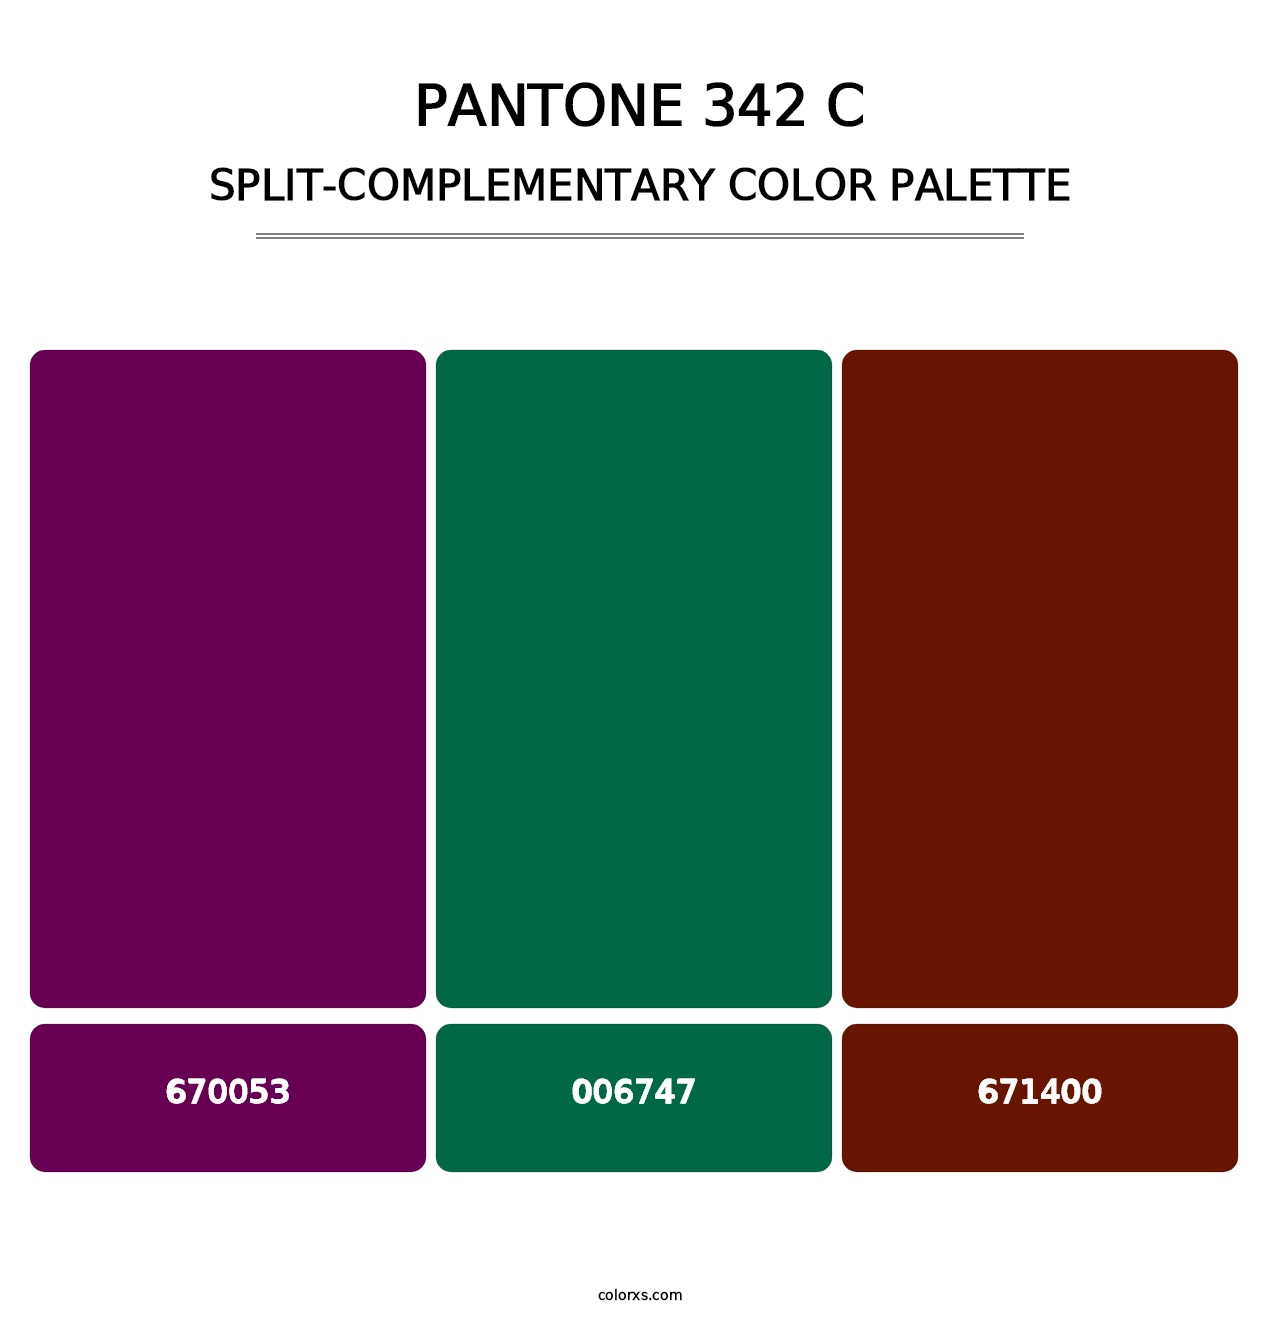 PANTONE 342 C - Split-Complementary Color Palette